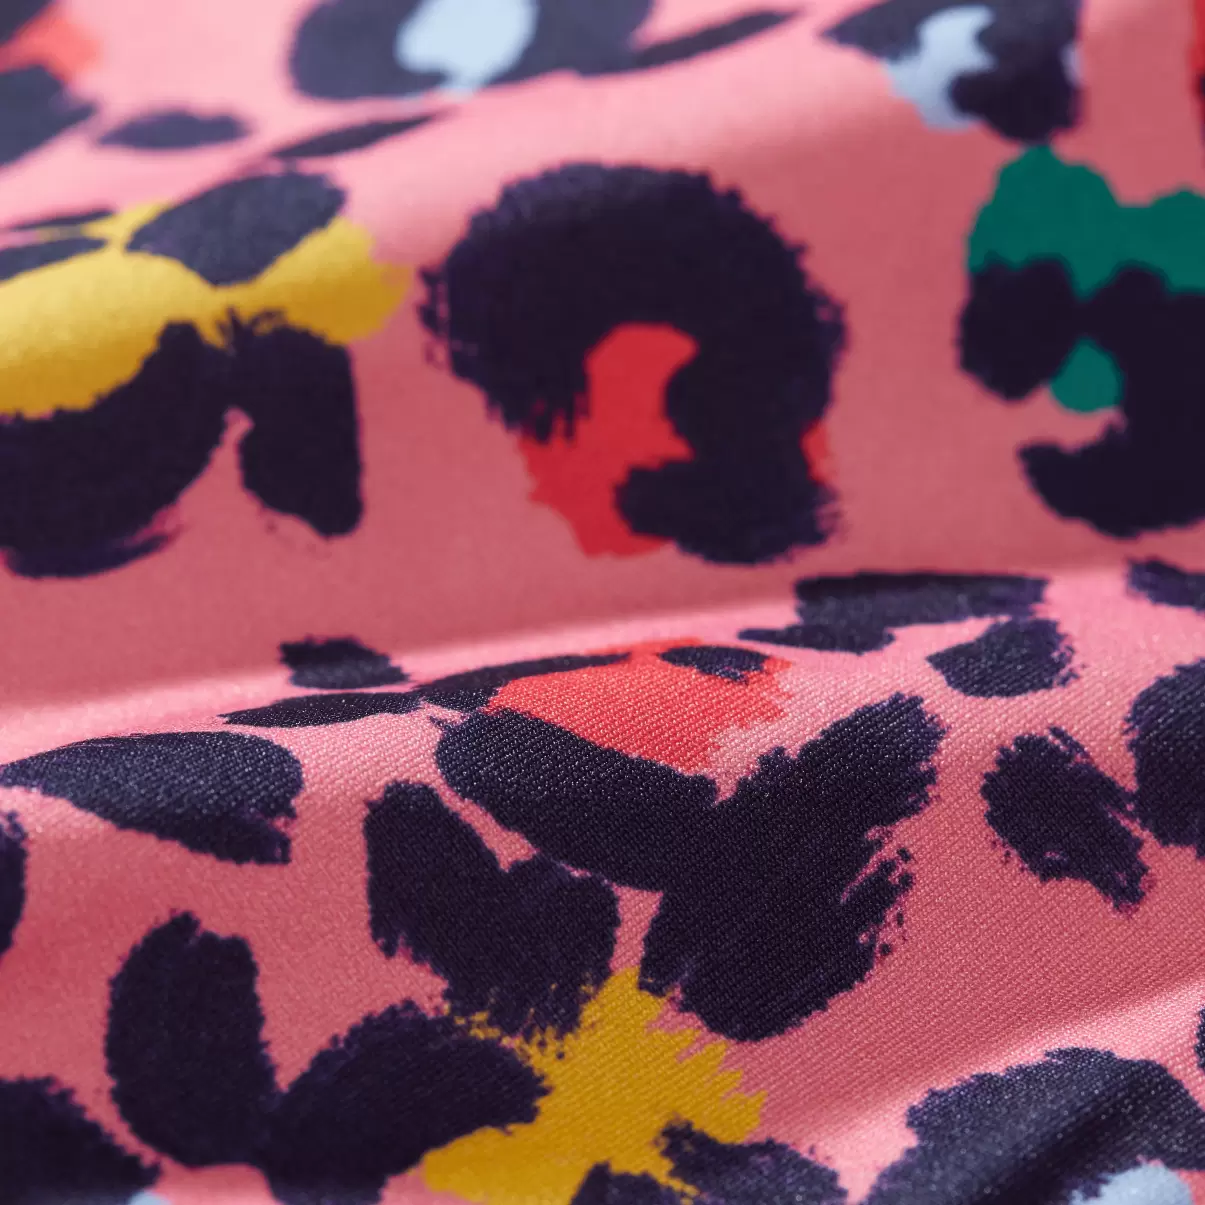 Badeanzug Turtles Leopard Badeanzug Für Mädchen Reduzierter Preis Vilebrequin Mädchen Bonbon / Rosa - 1